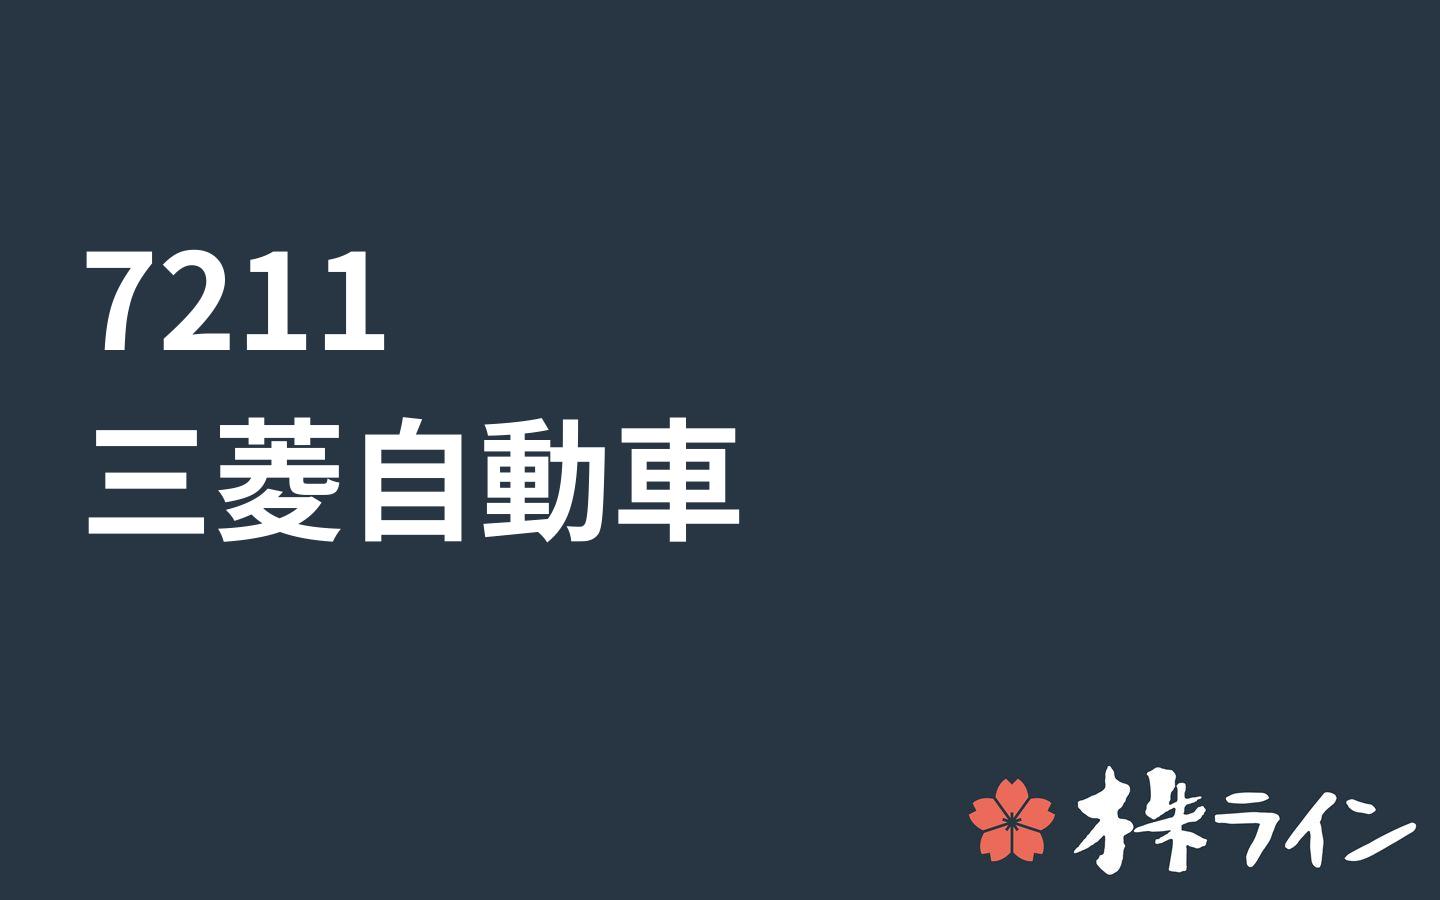 自動車 株 三菱 三菱自動車(株)【7211】：株式/株価